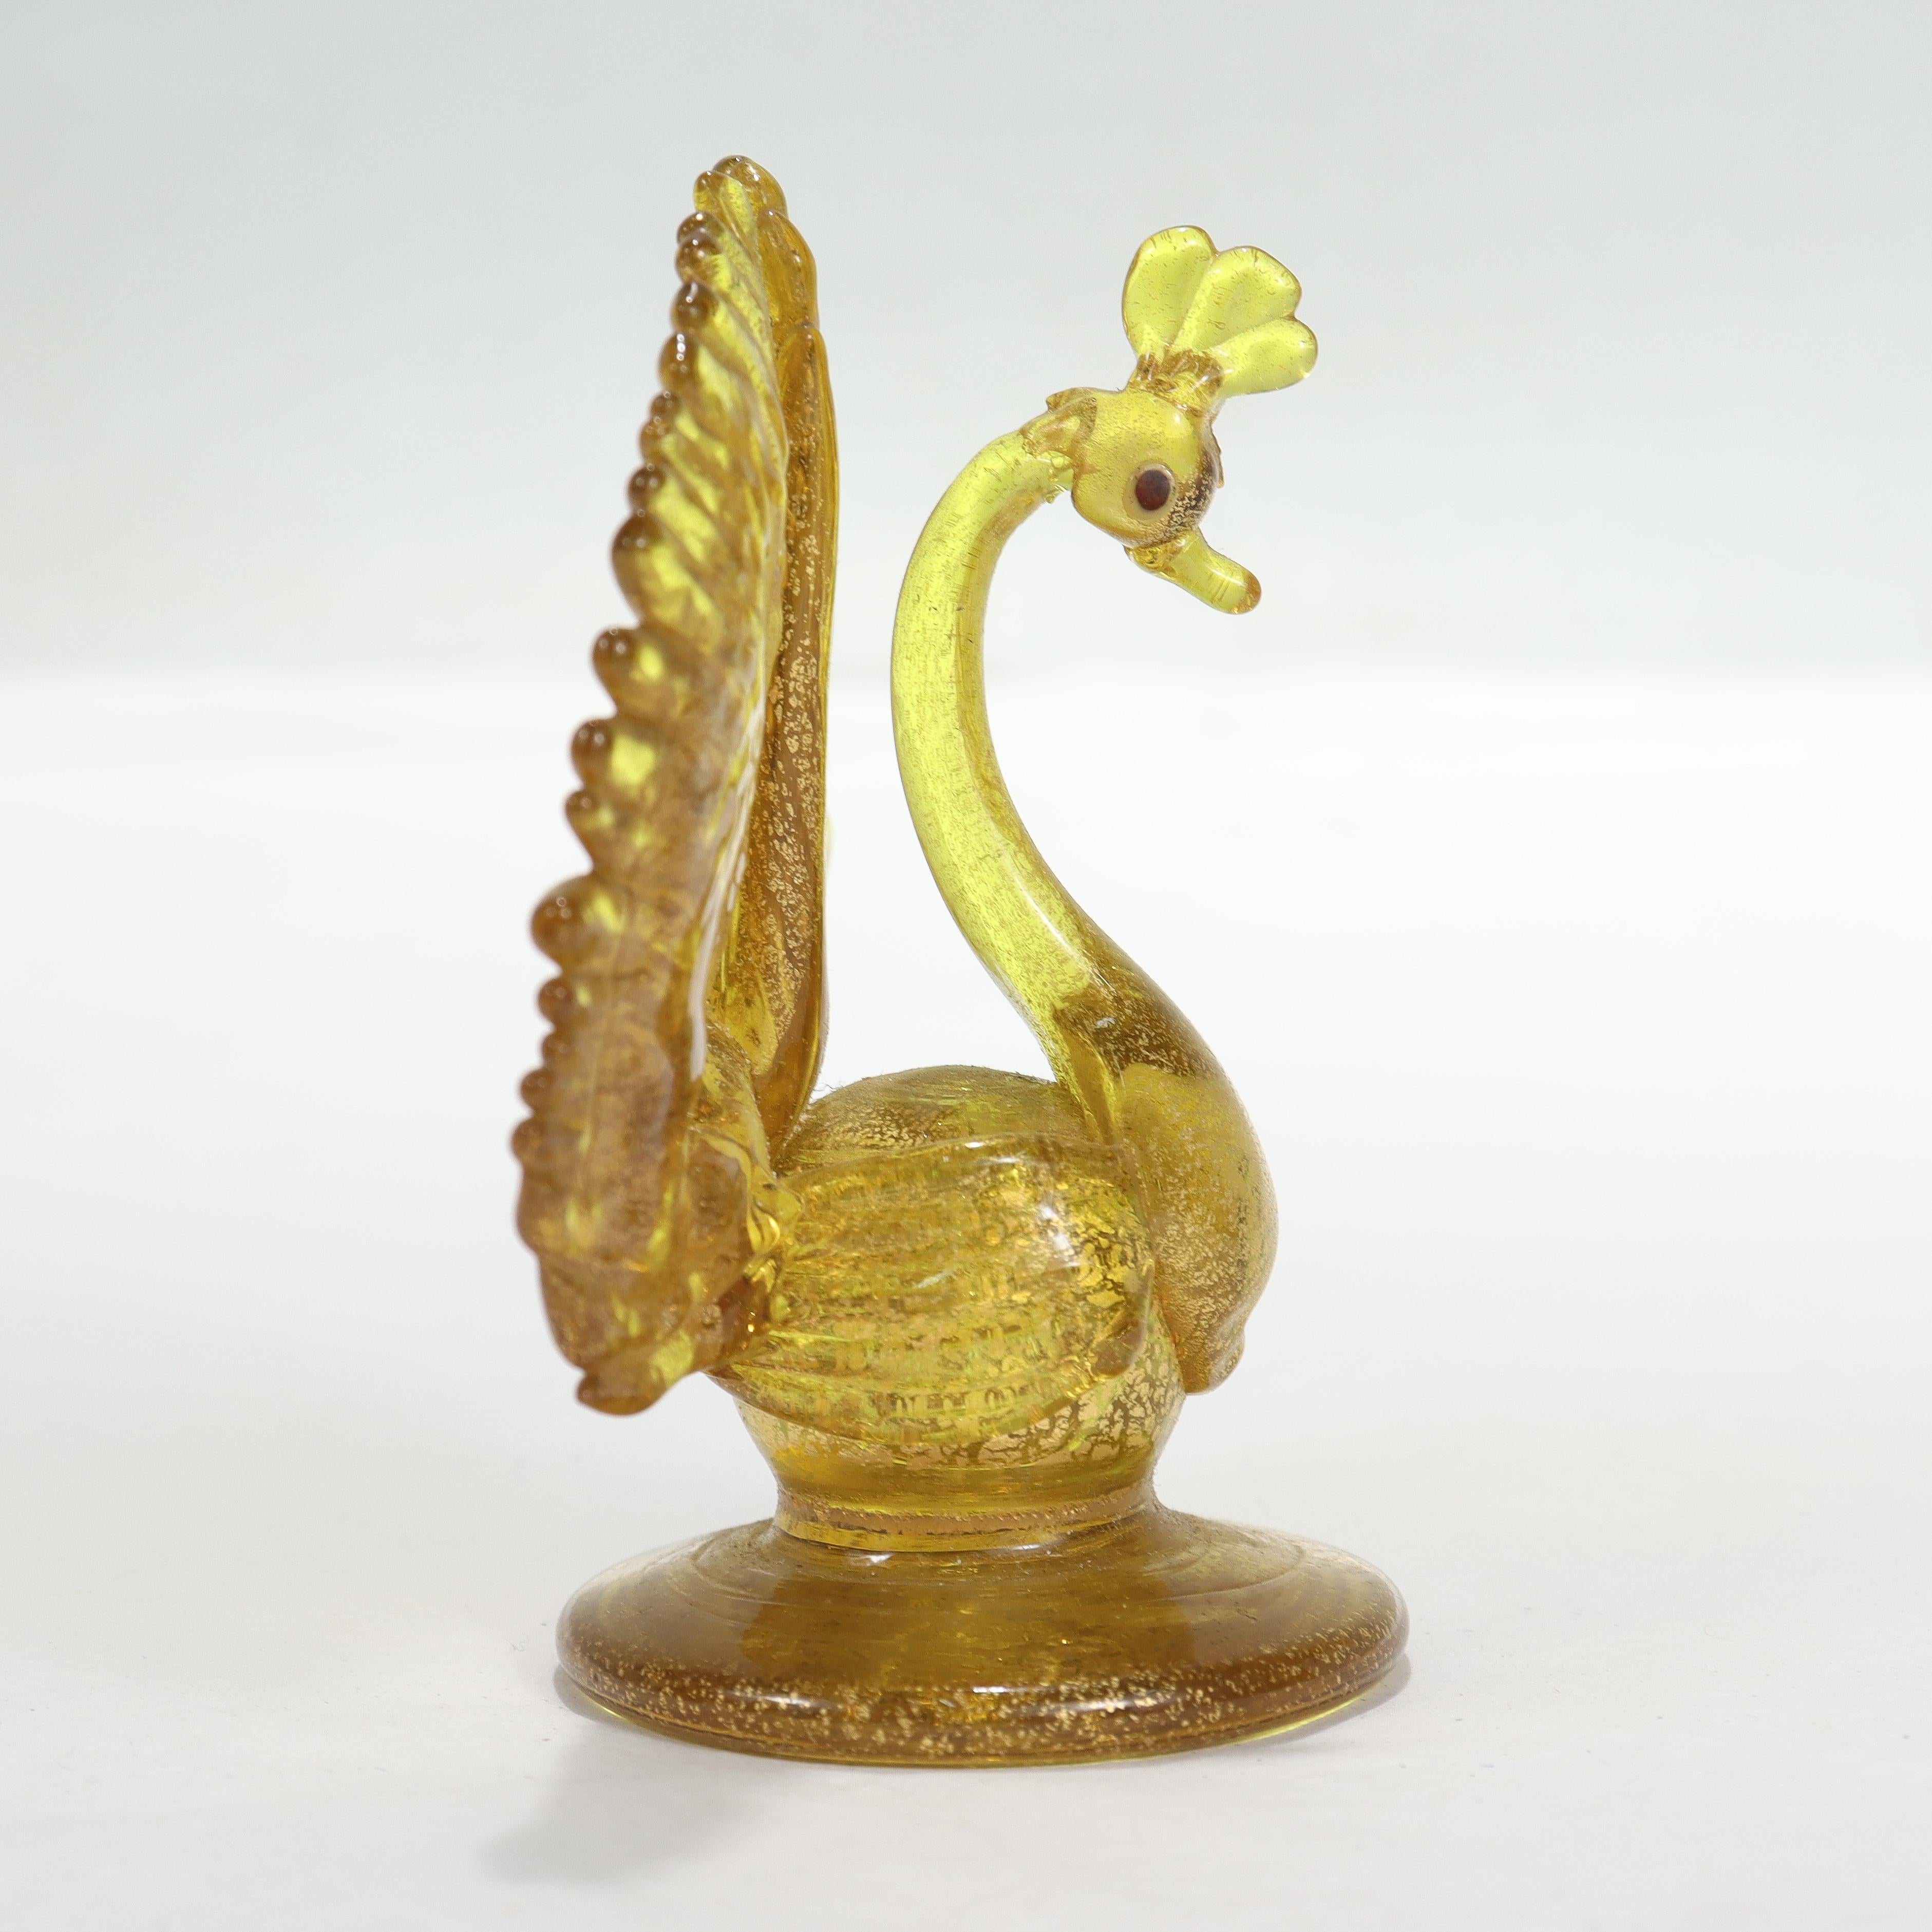 Eine schöne Vintage-Figur aus venezianischem oder Murano-Glas oder ein Tischkartenhalter.

In Form eines Pfaus aus gelbem Glas mit Goldfolie und dunkelblauen Augen.

Wird Salviati zugeschrieben.

Einfach ein wunderschöner Pfau aus